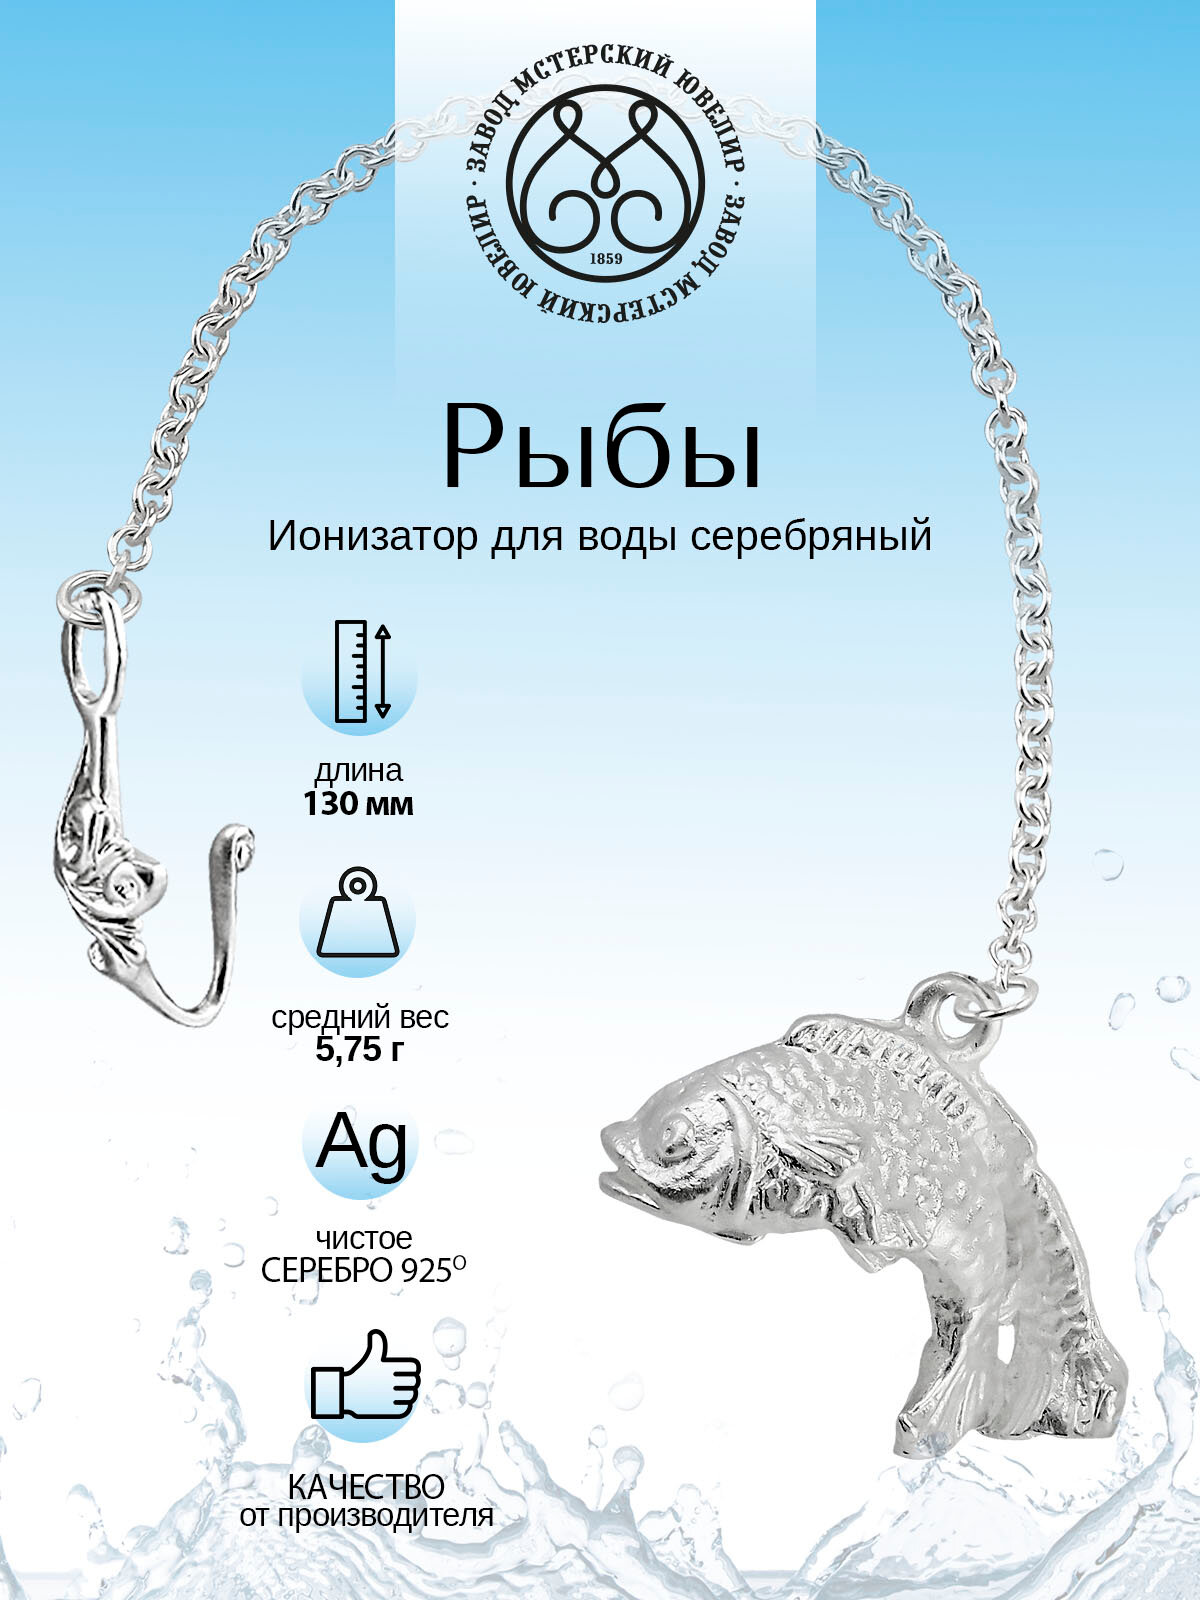 Серебряный ионизатор для воды №31 "Рыбы" от Мстерский ювелир